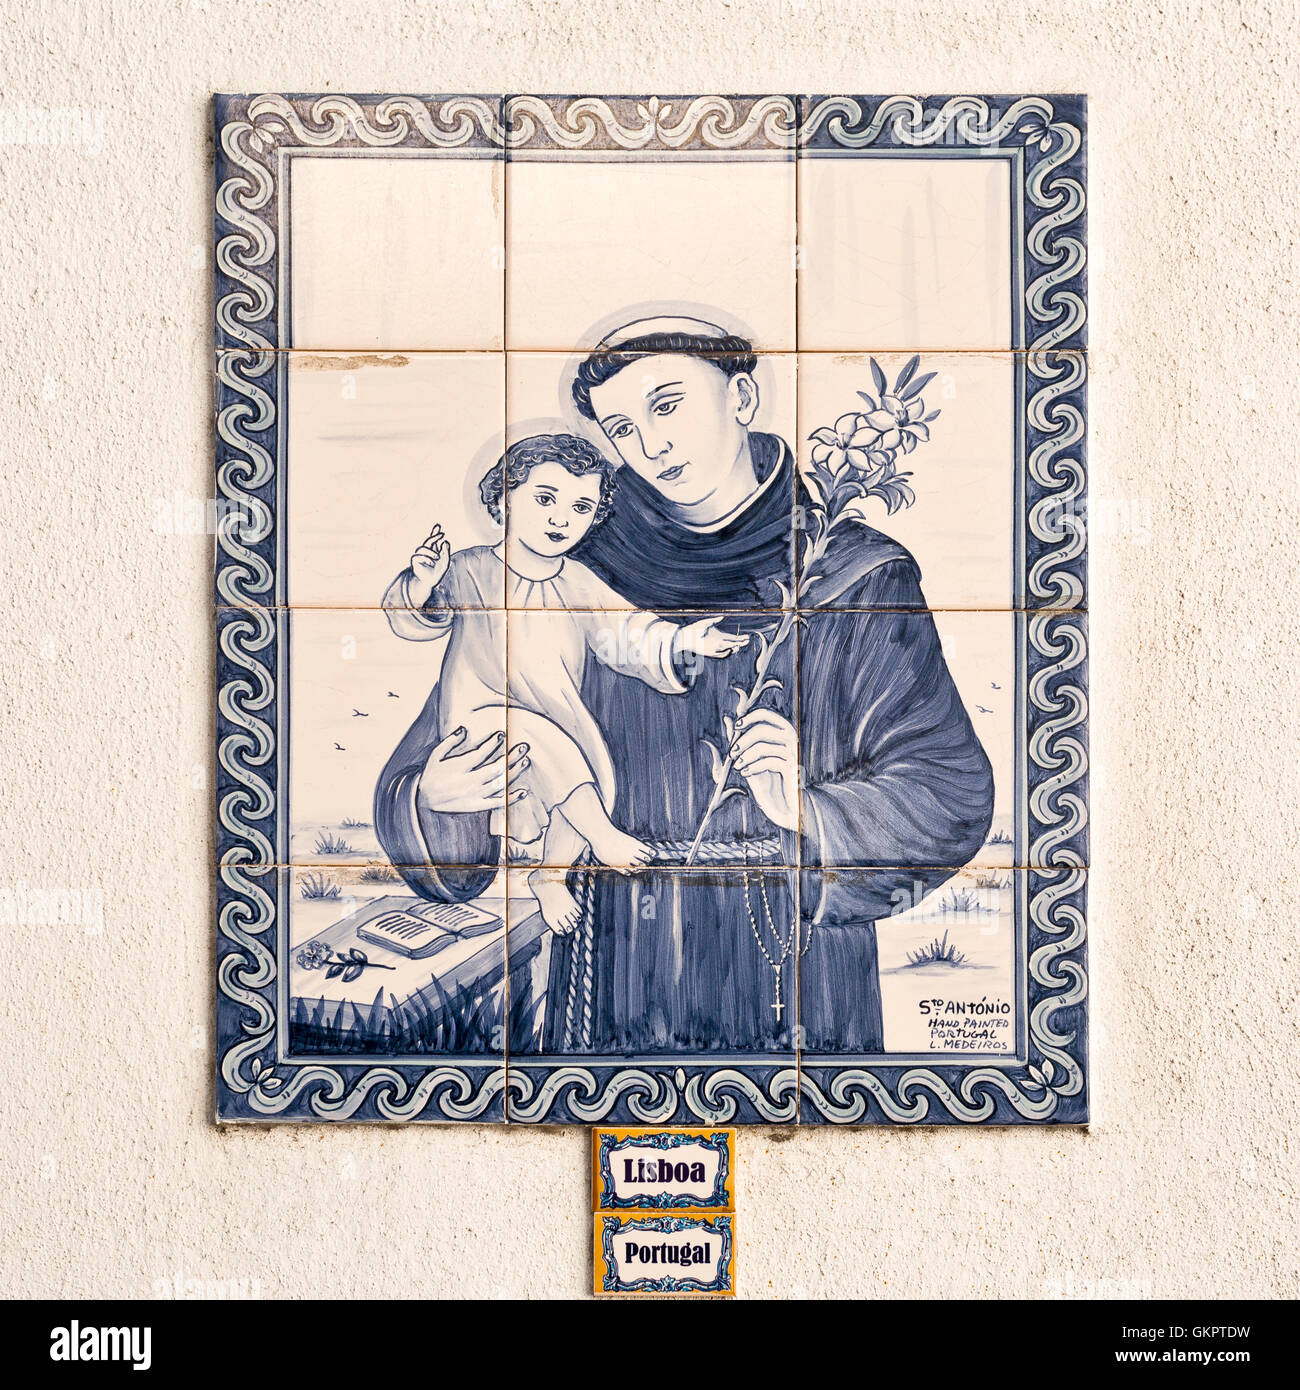 Panneau tuile avec l'image de Saint Antoine, le saint patron de Lisbonne, peuvent être trouvés dans les rues de Lisbonne, Portugal Banque D'Images